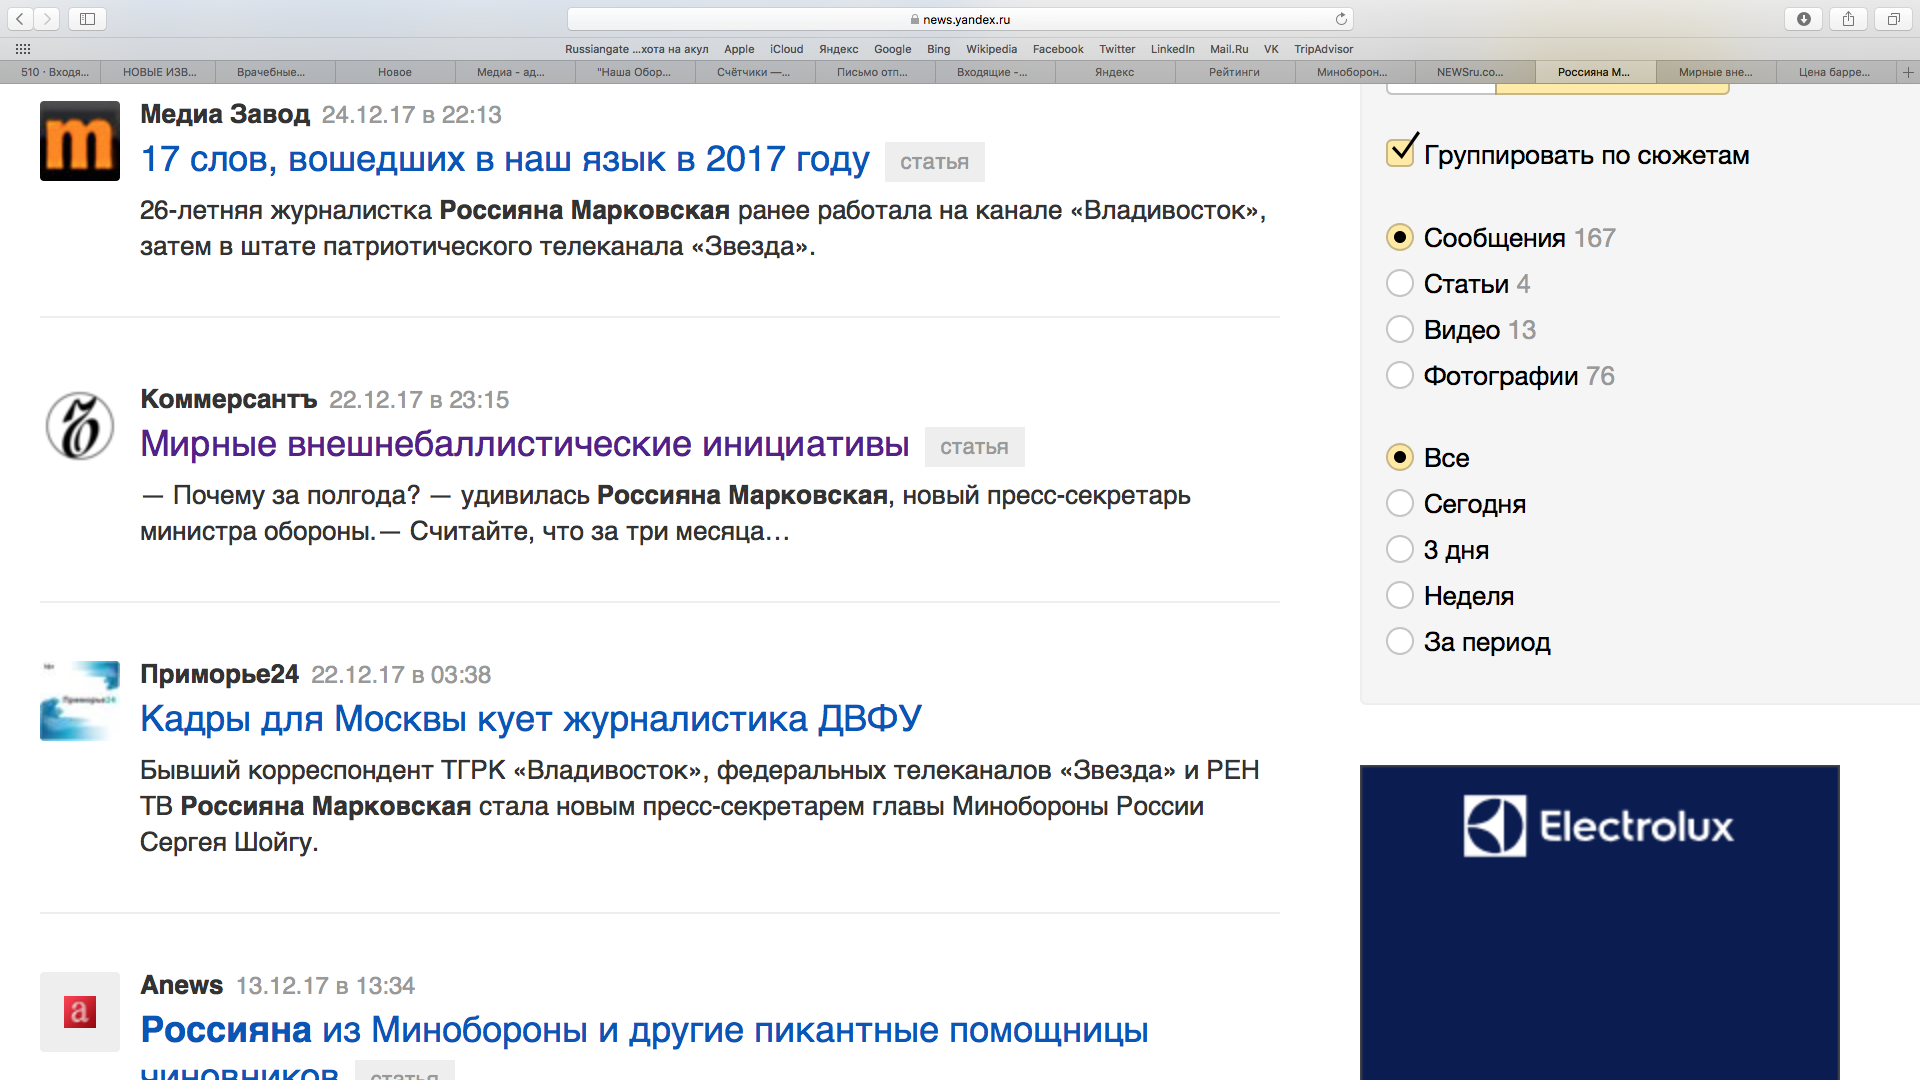 Всезнающий Яндекс нашел всего одно упоминание Россияны Марковской - в статье Ъ о коллегии Минобороны